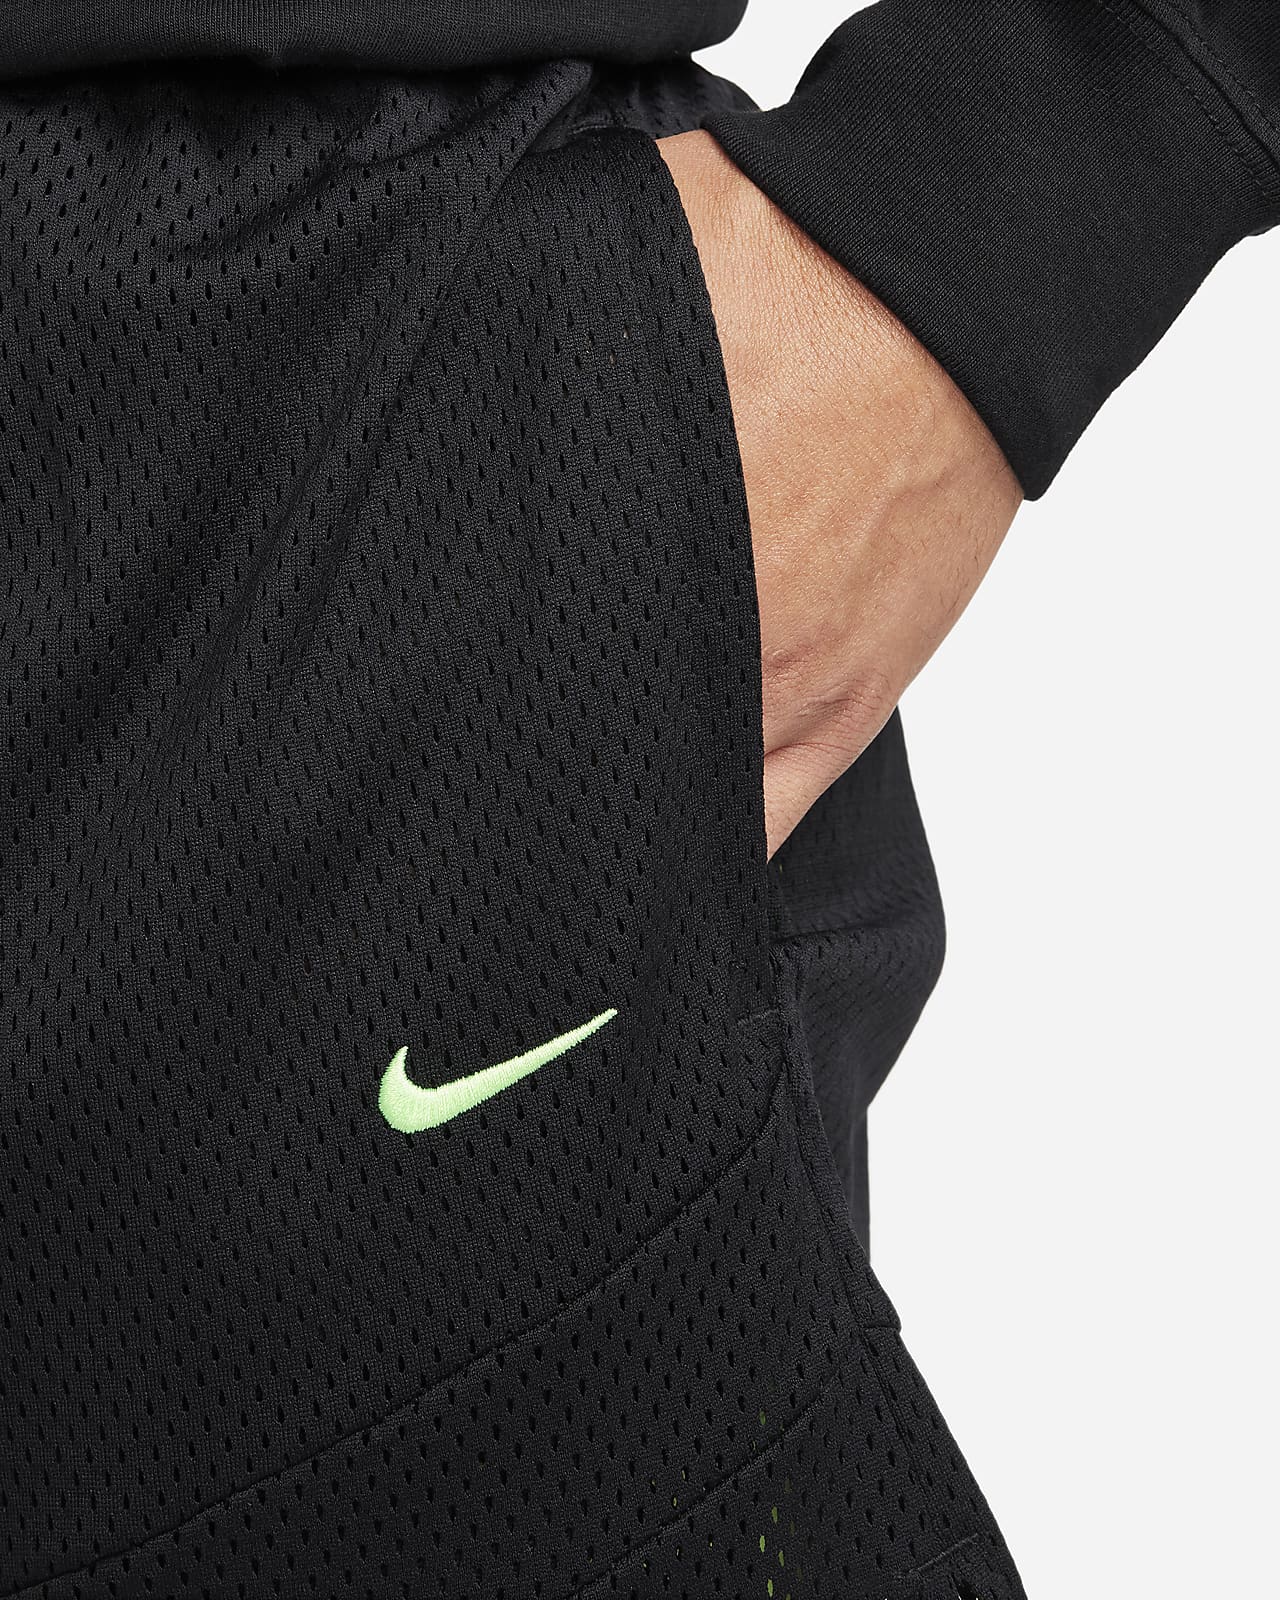 Ja morant Nike Tech fleece in 2023  Stylish men wear, Nike tech fleece,  Stylish men